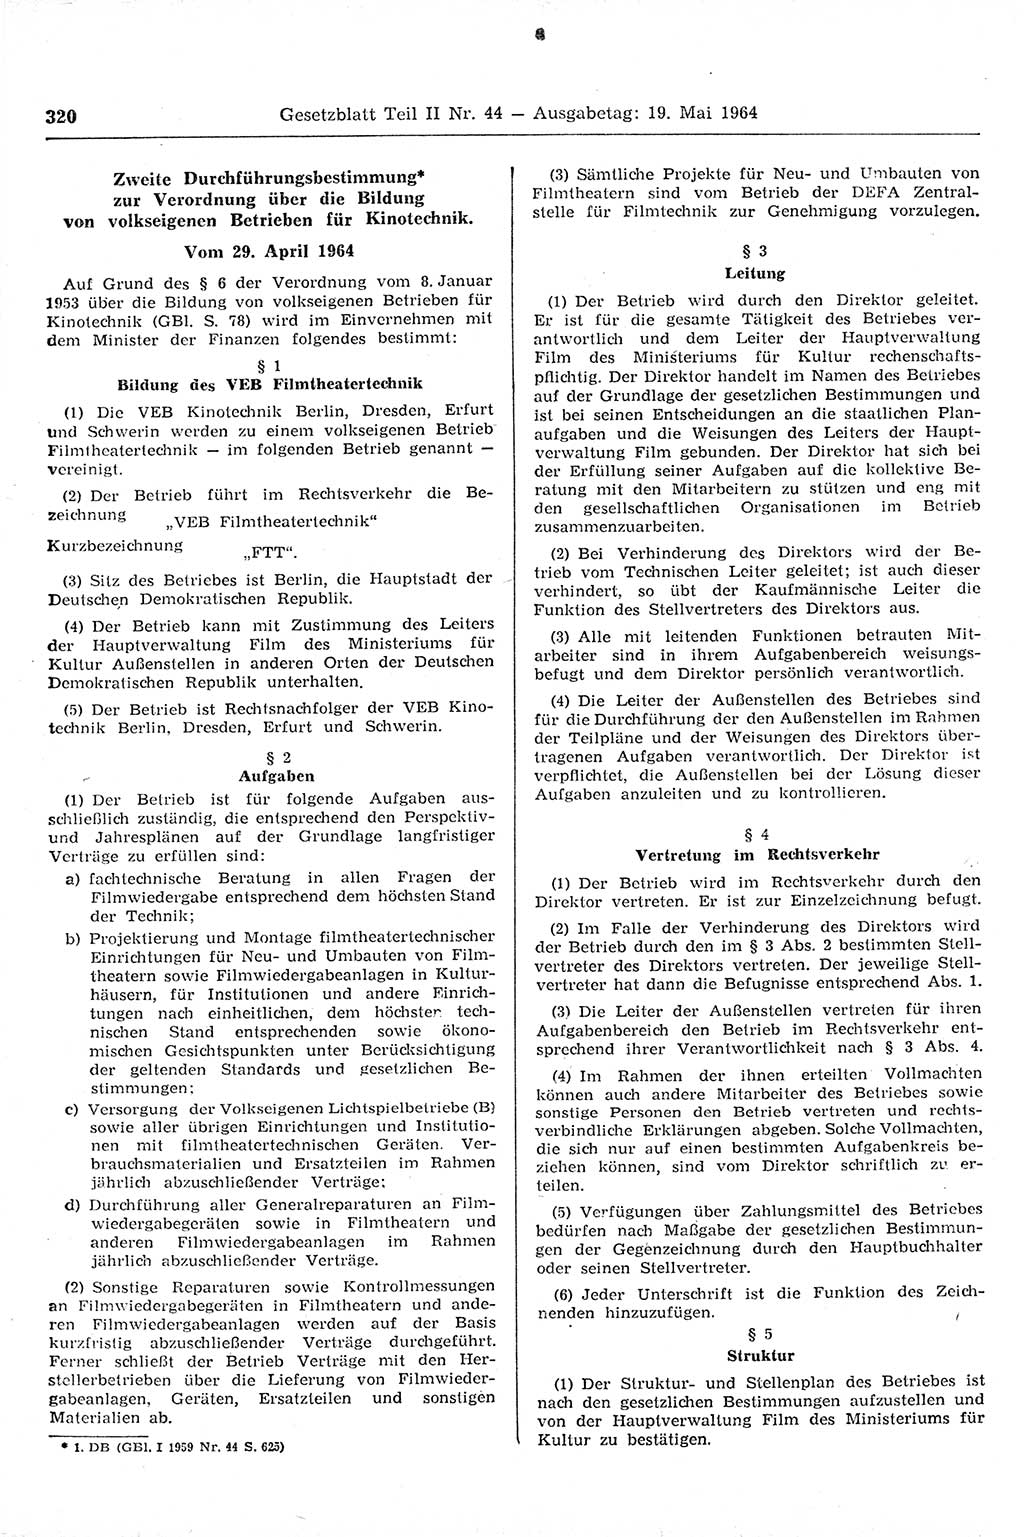 Gesetzblatt (GBl.) der Deutschen Demokratischen Republik (DDR) Teil ⅠⅠ 1964, Seite 320 (GBl. DDR ⅠⅠ 1964, S. 320)